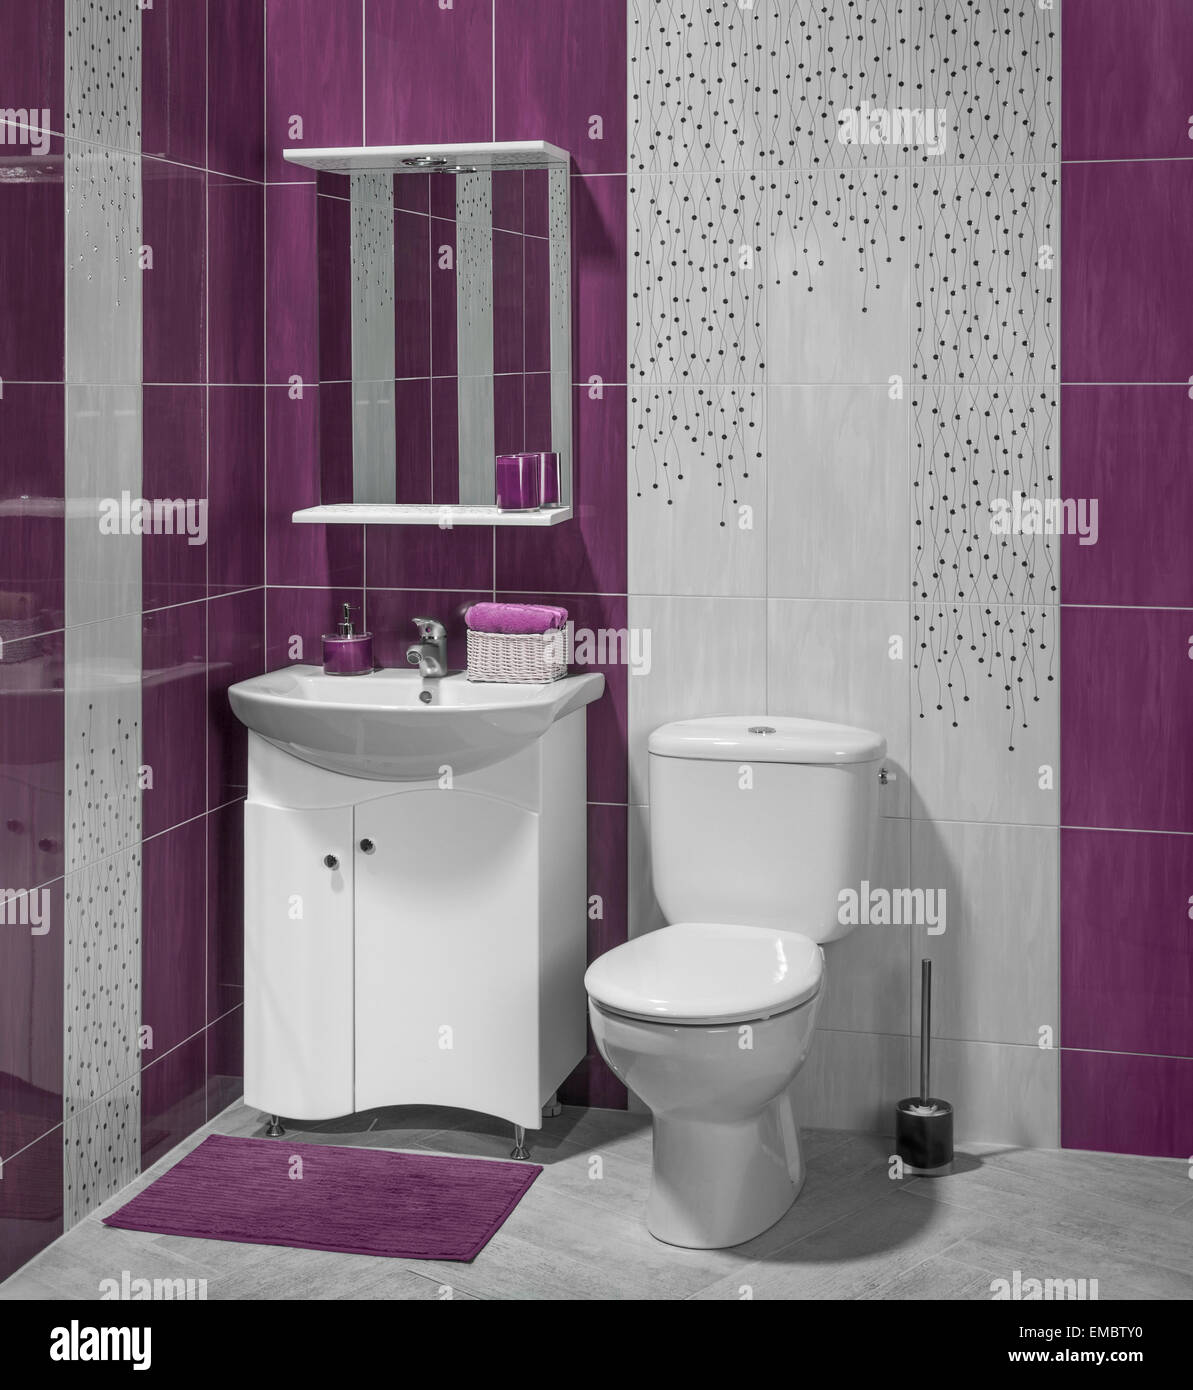 Ein Luxus-Interieur des modernen Badezimmer mit Waschbecken und WC;  verziert mit lila und grau Fliesen Stockfotografie - Alamy